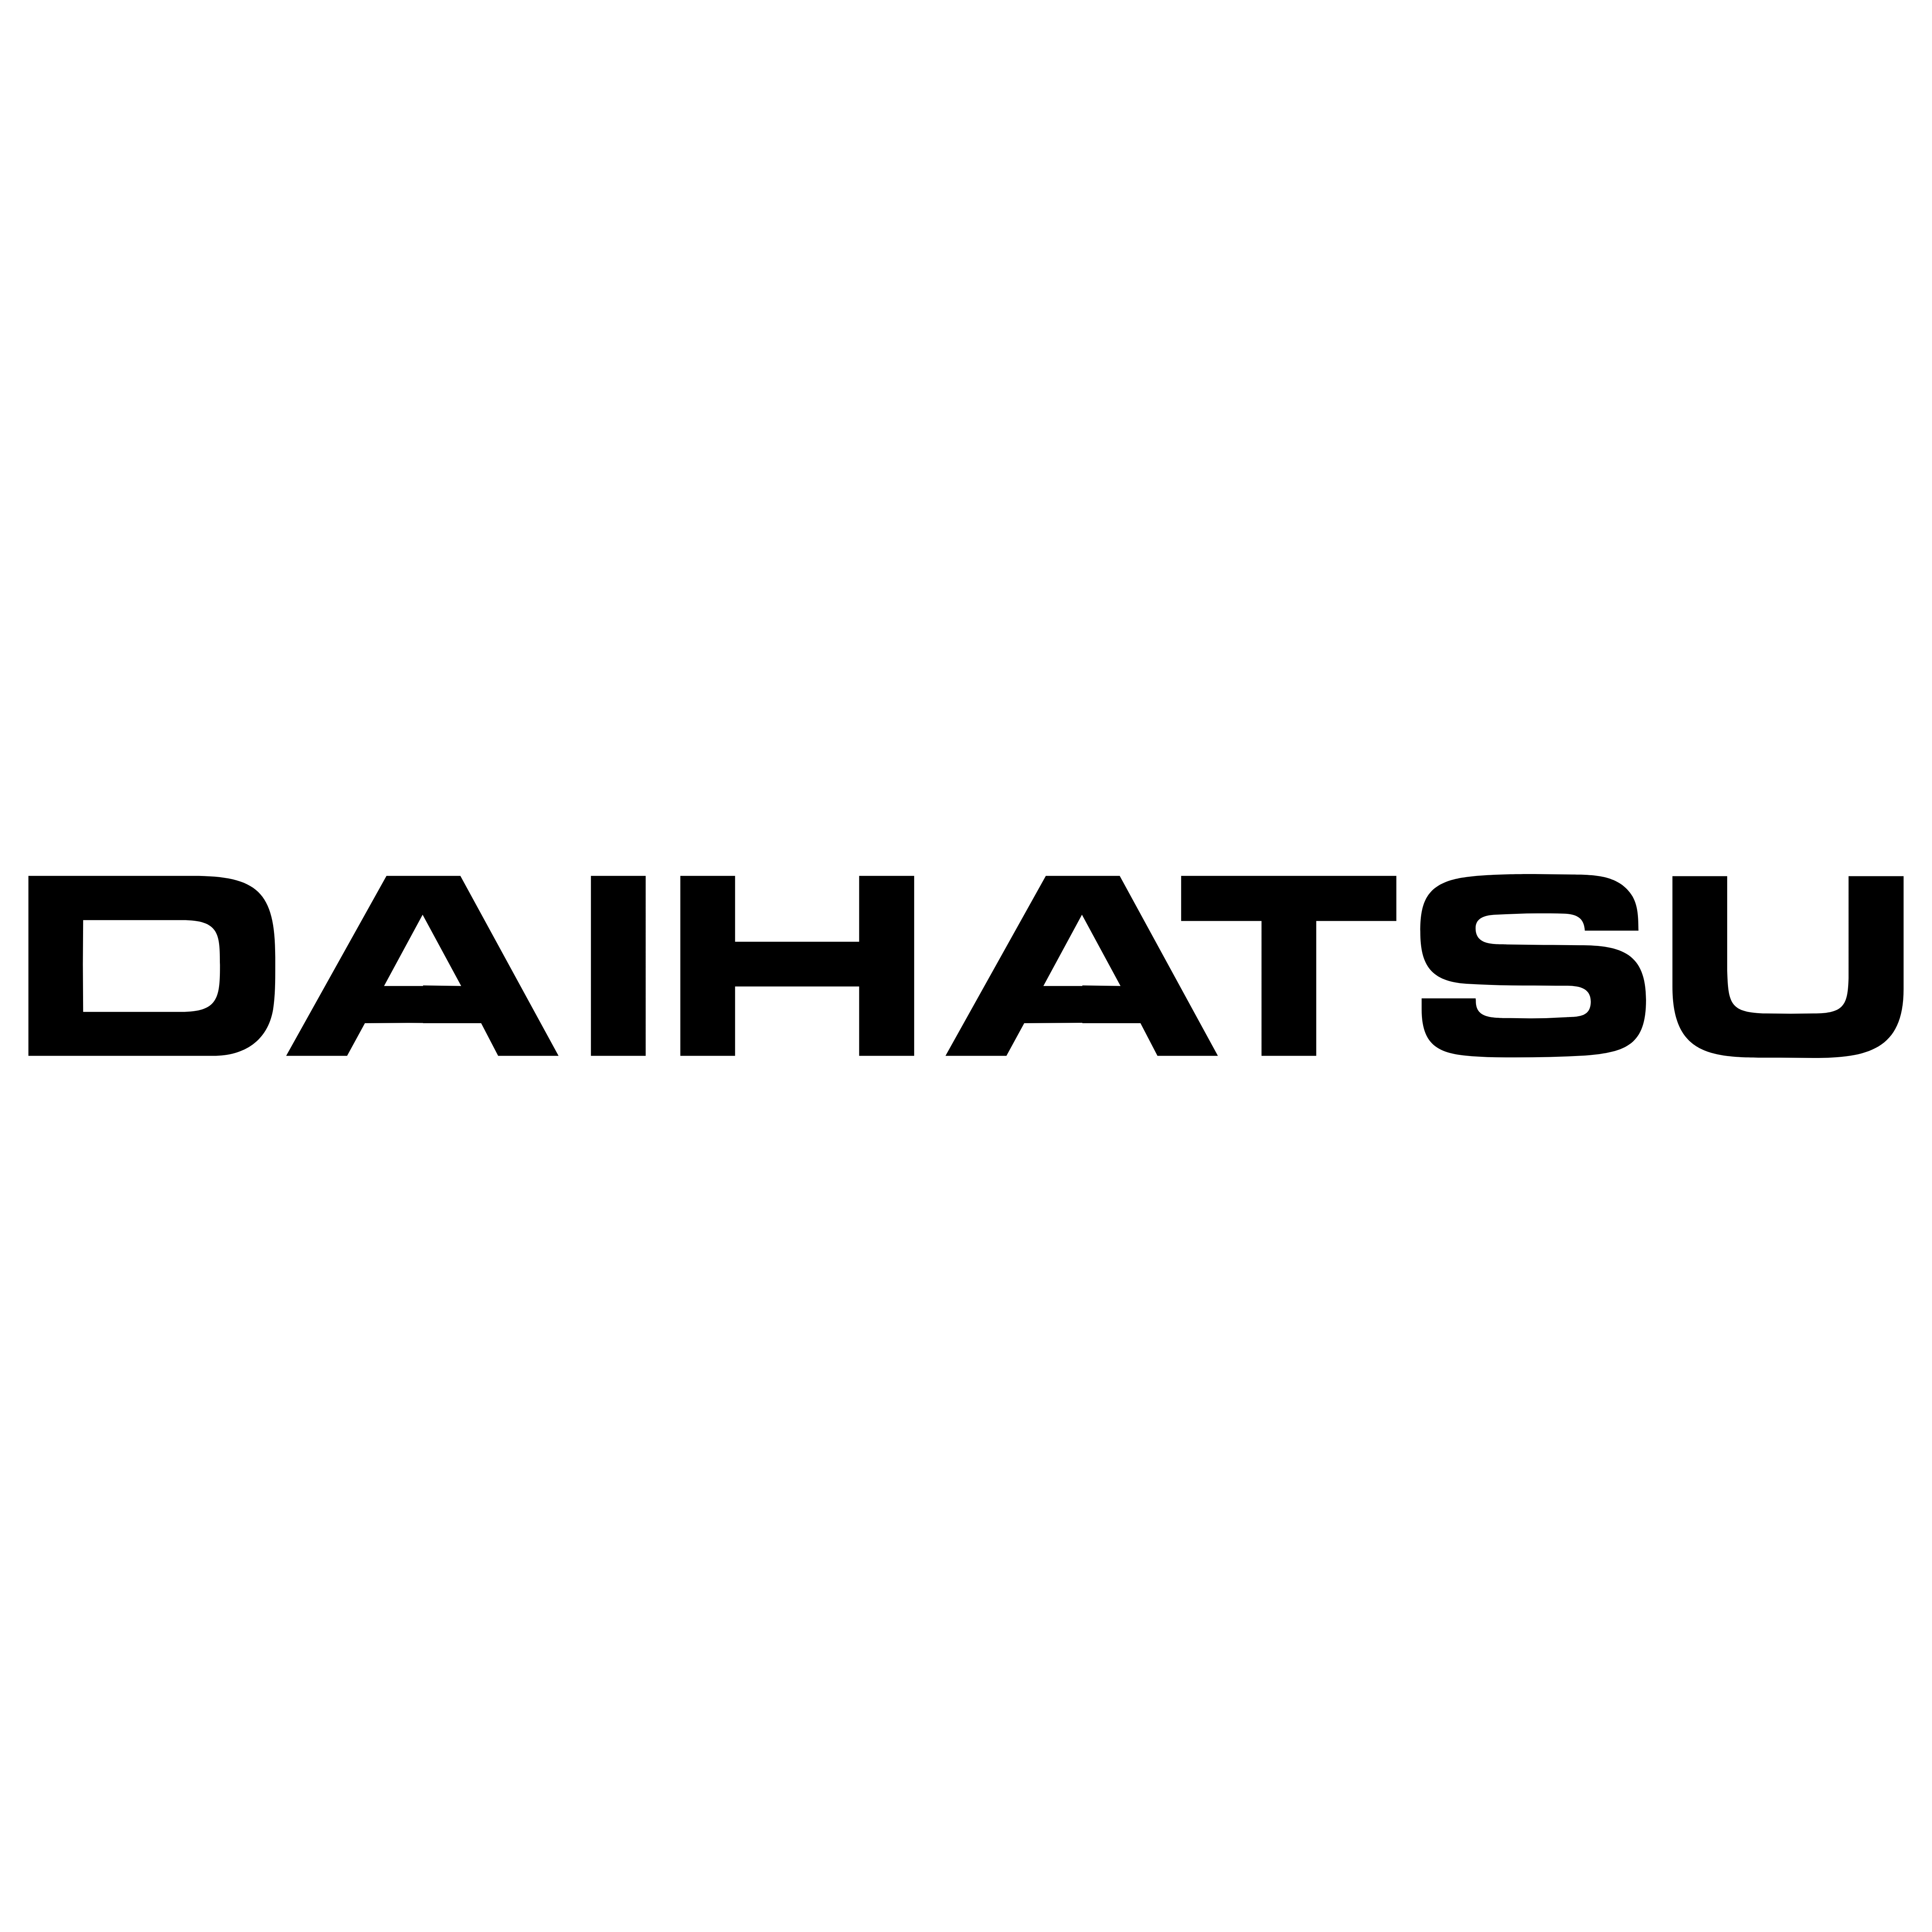 Daihatsu Logos Download